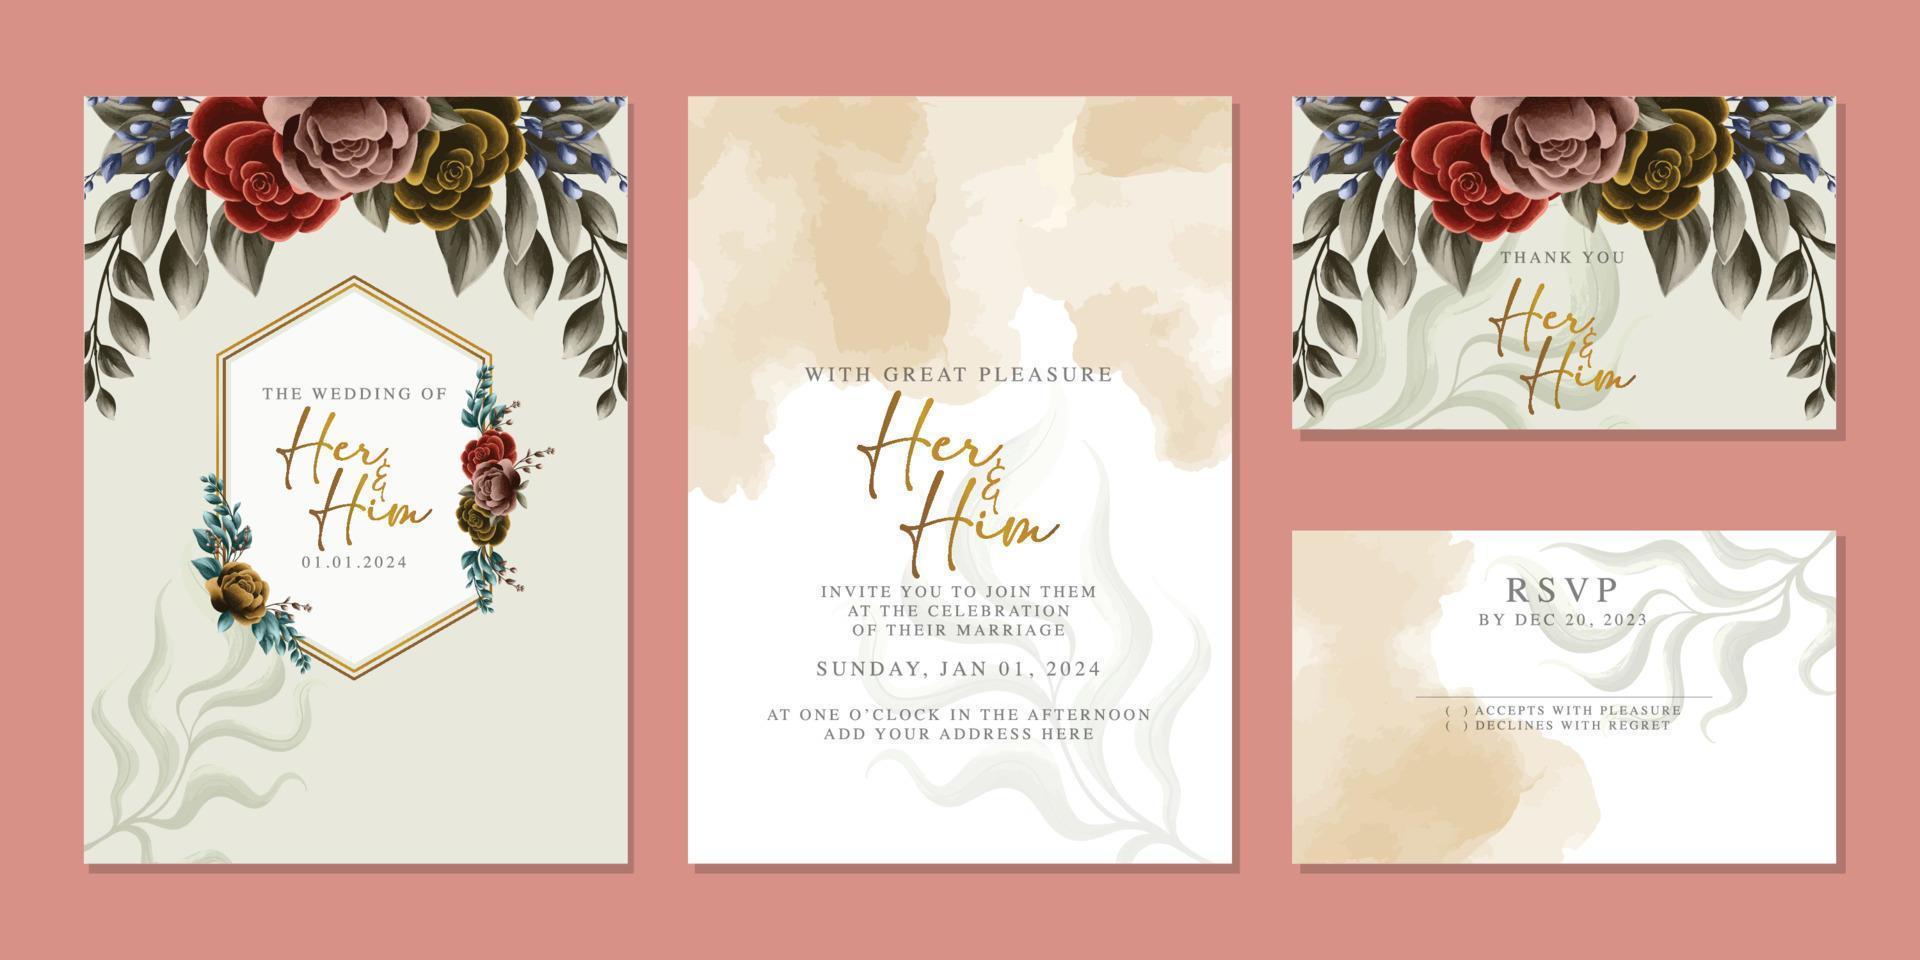 elegante bloemen bruiloft uitnodigingskaart in scandinavische kleuren vector